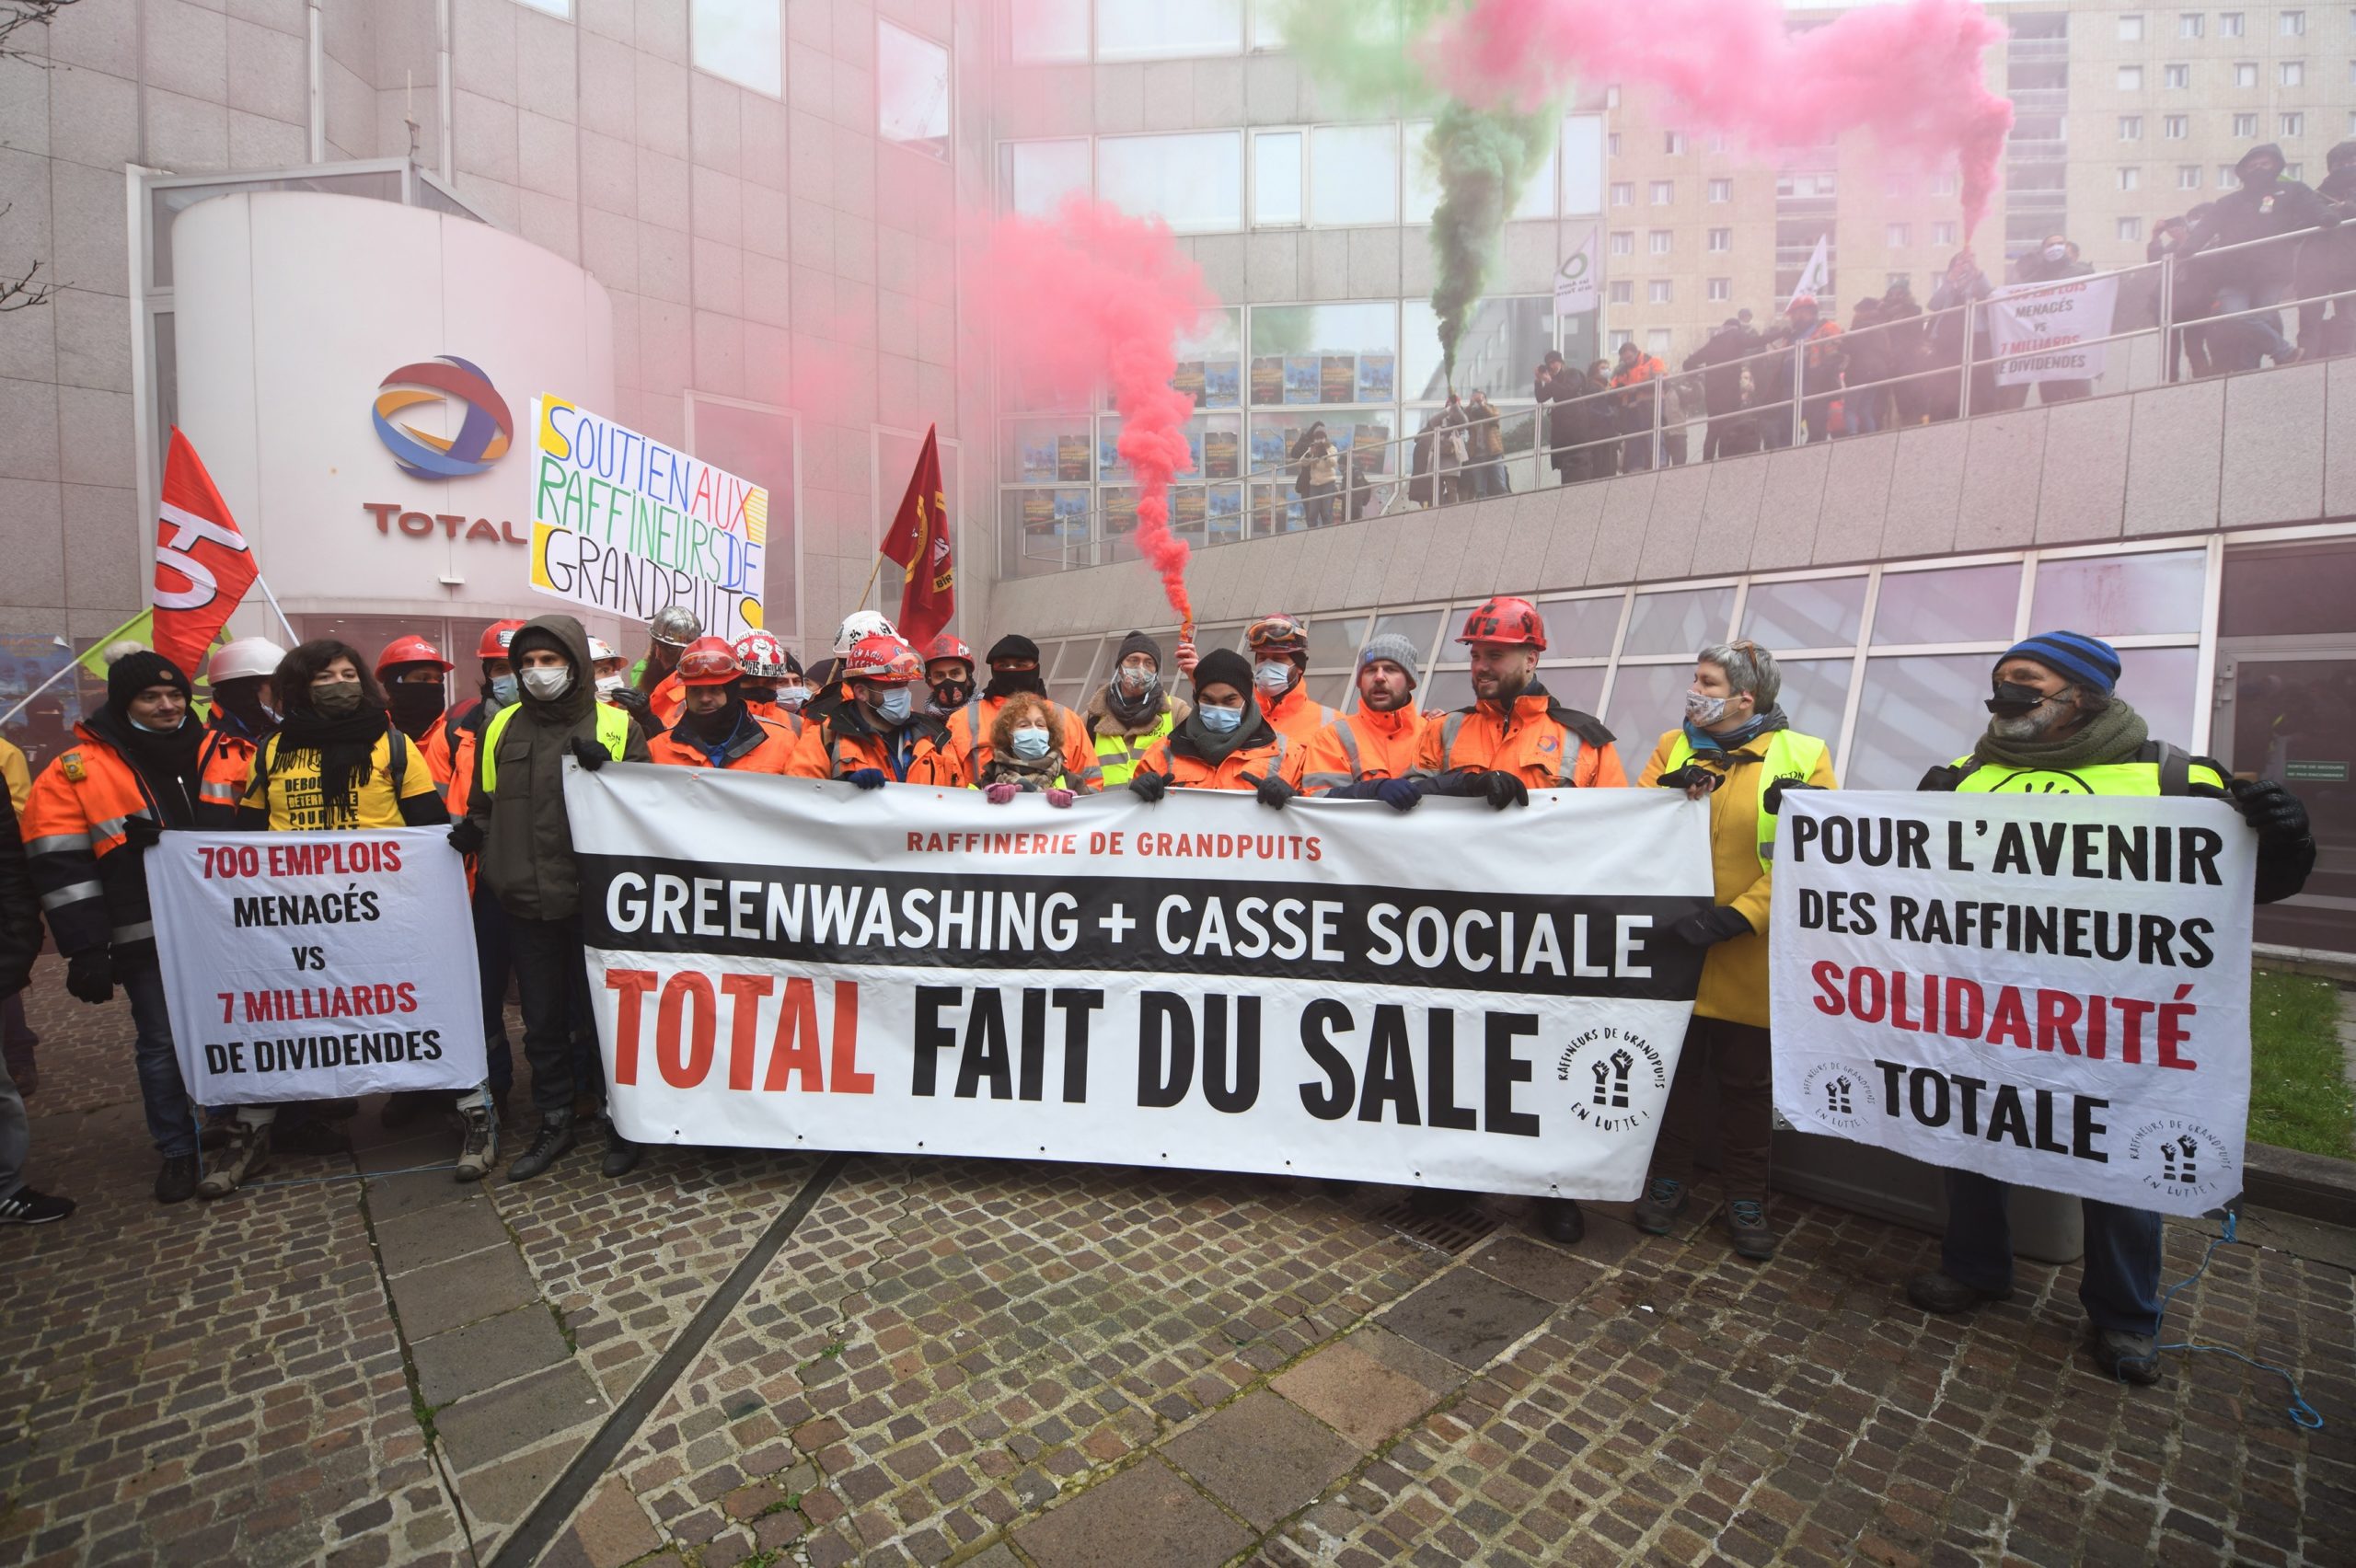 Fransa’da Grandpuits rafinerisinin kapatılma planına karşı grevde olan işçiler Total binasında eylem yaptı: Total pislik yapıyor